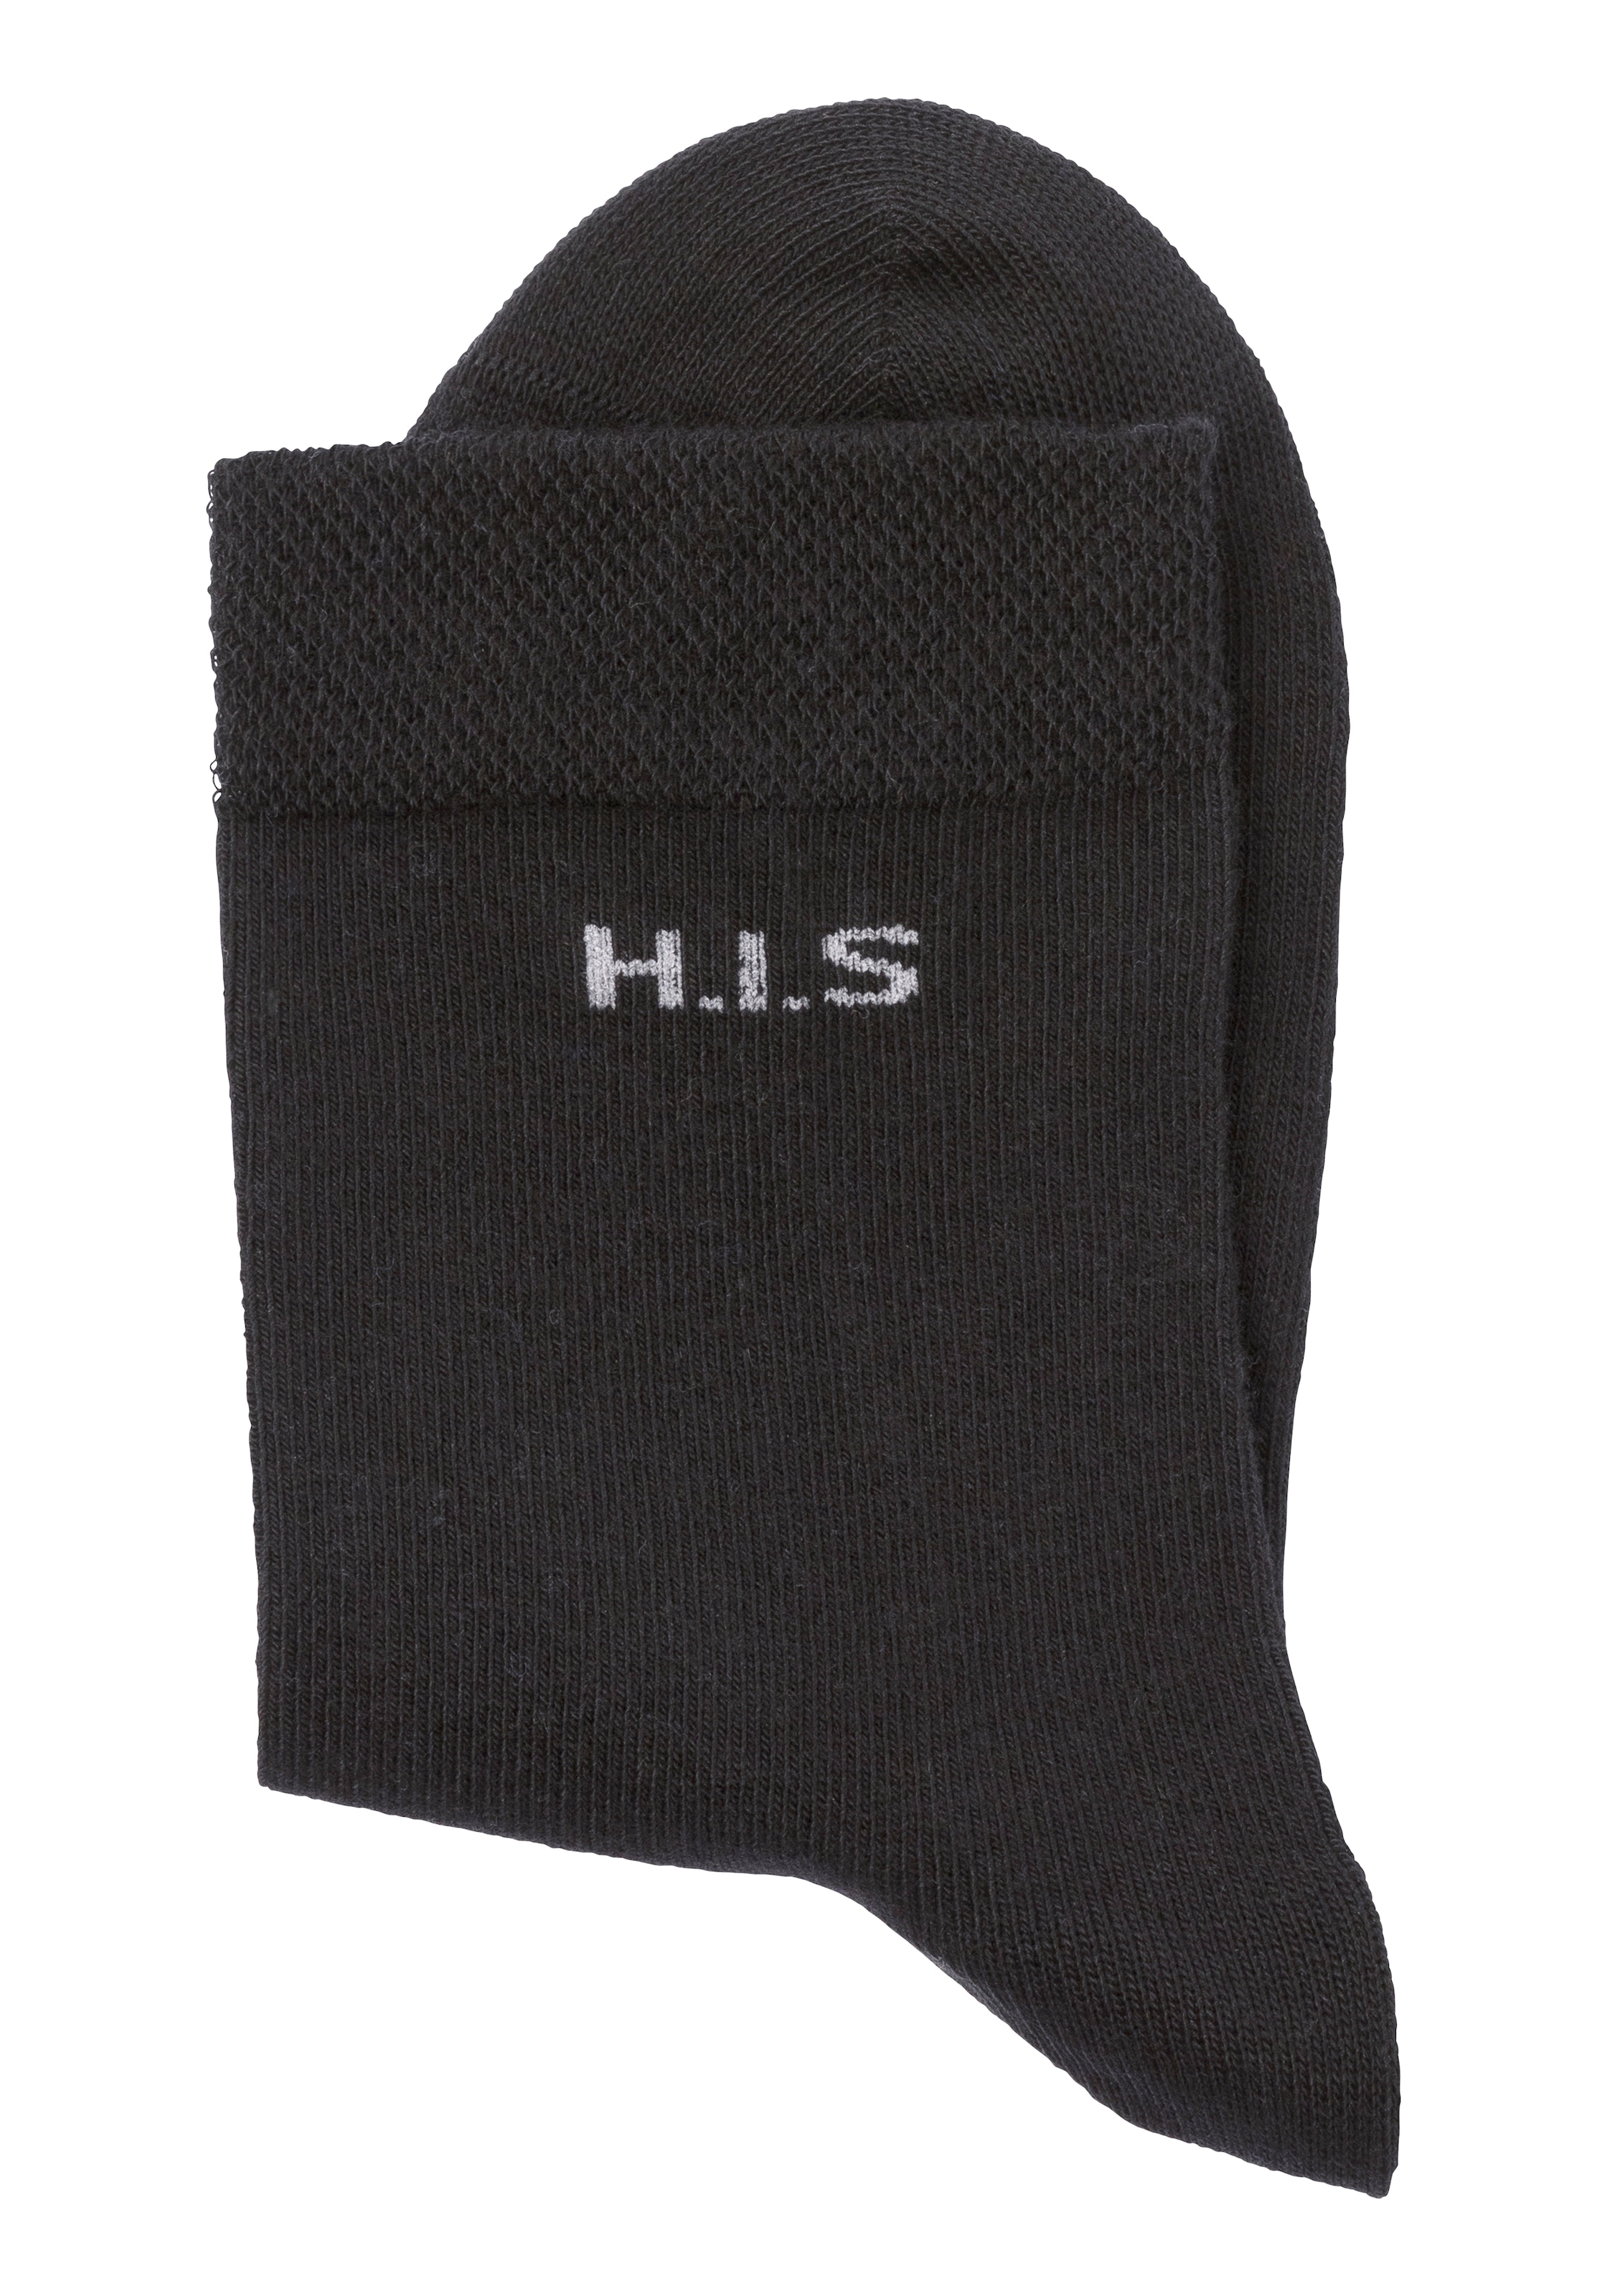 ♕ H.I.S Socken, (Set, 4 Paar), ohne einschneidendes Bündchen  versandkostenfrei bestellen